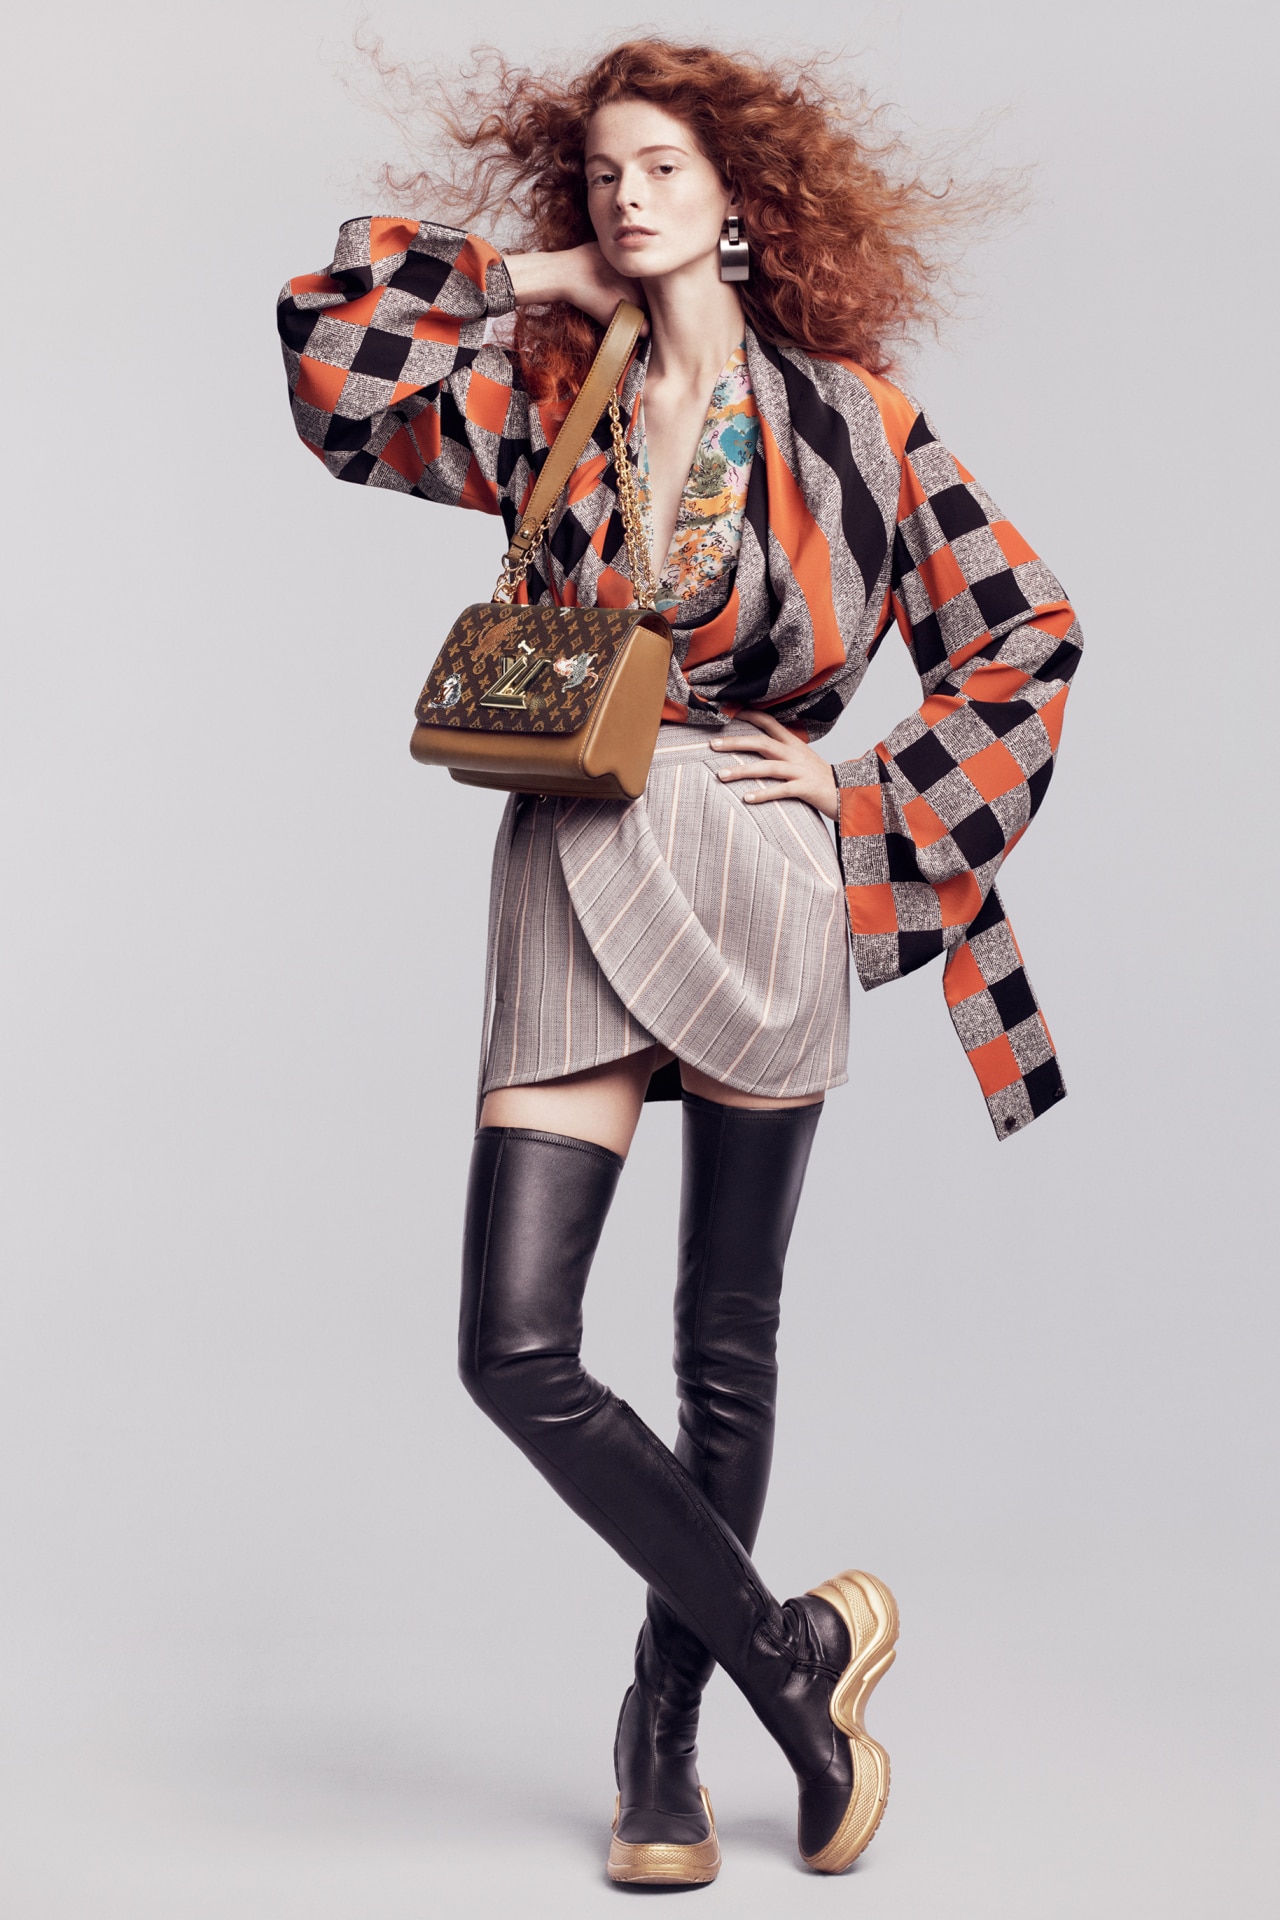 Grace Coddington on her Louis Vuitton collaboration - Vogue Australia